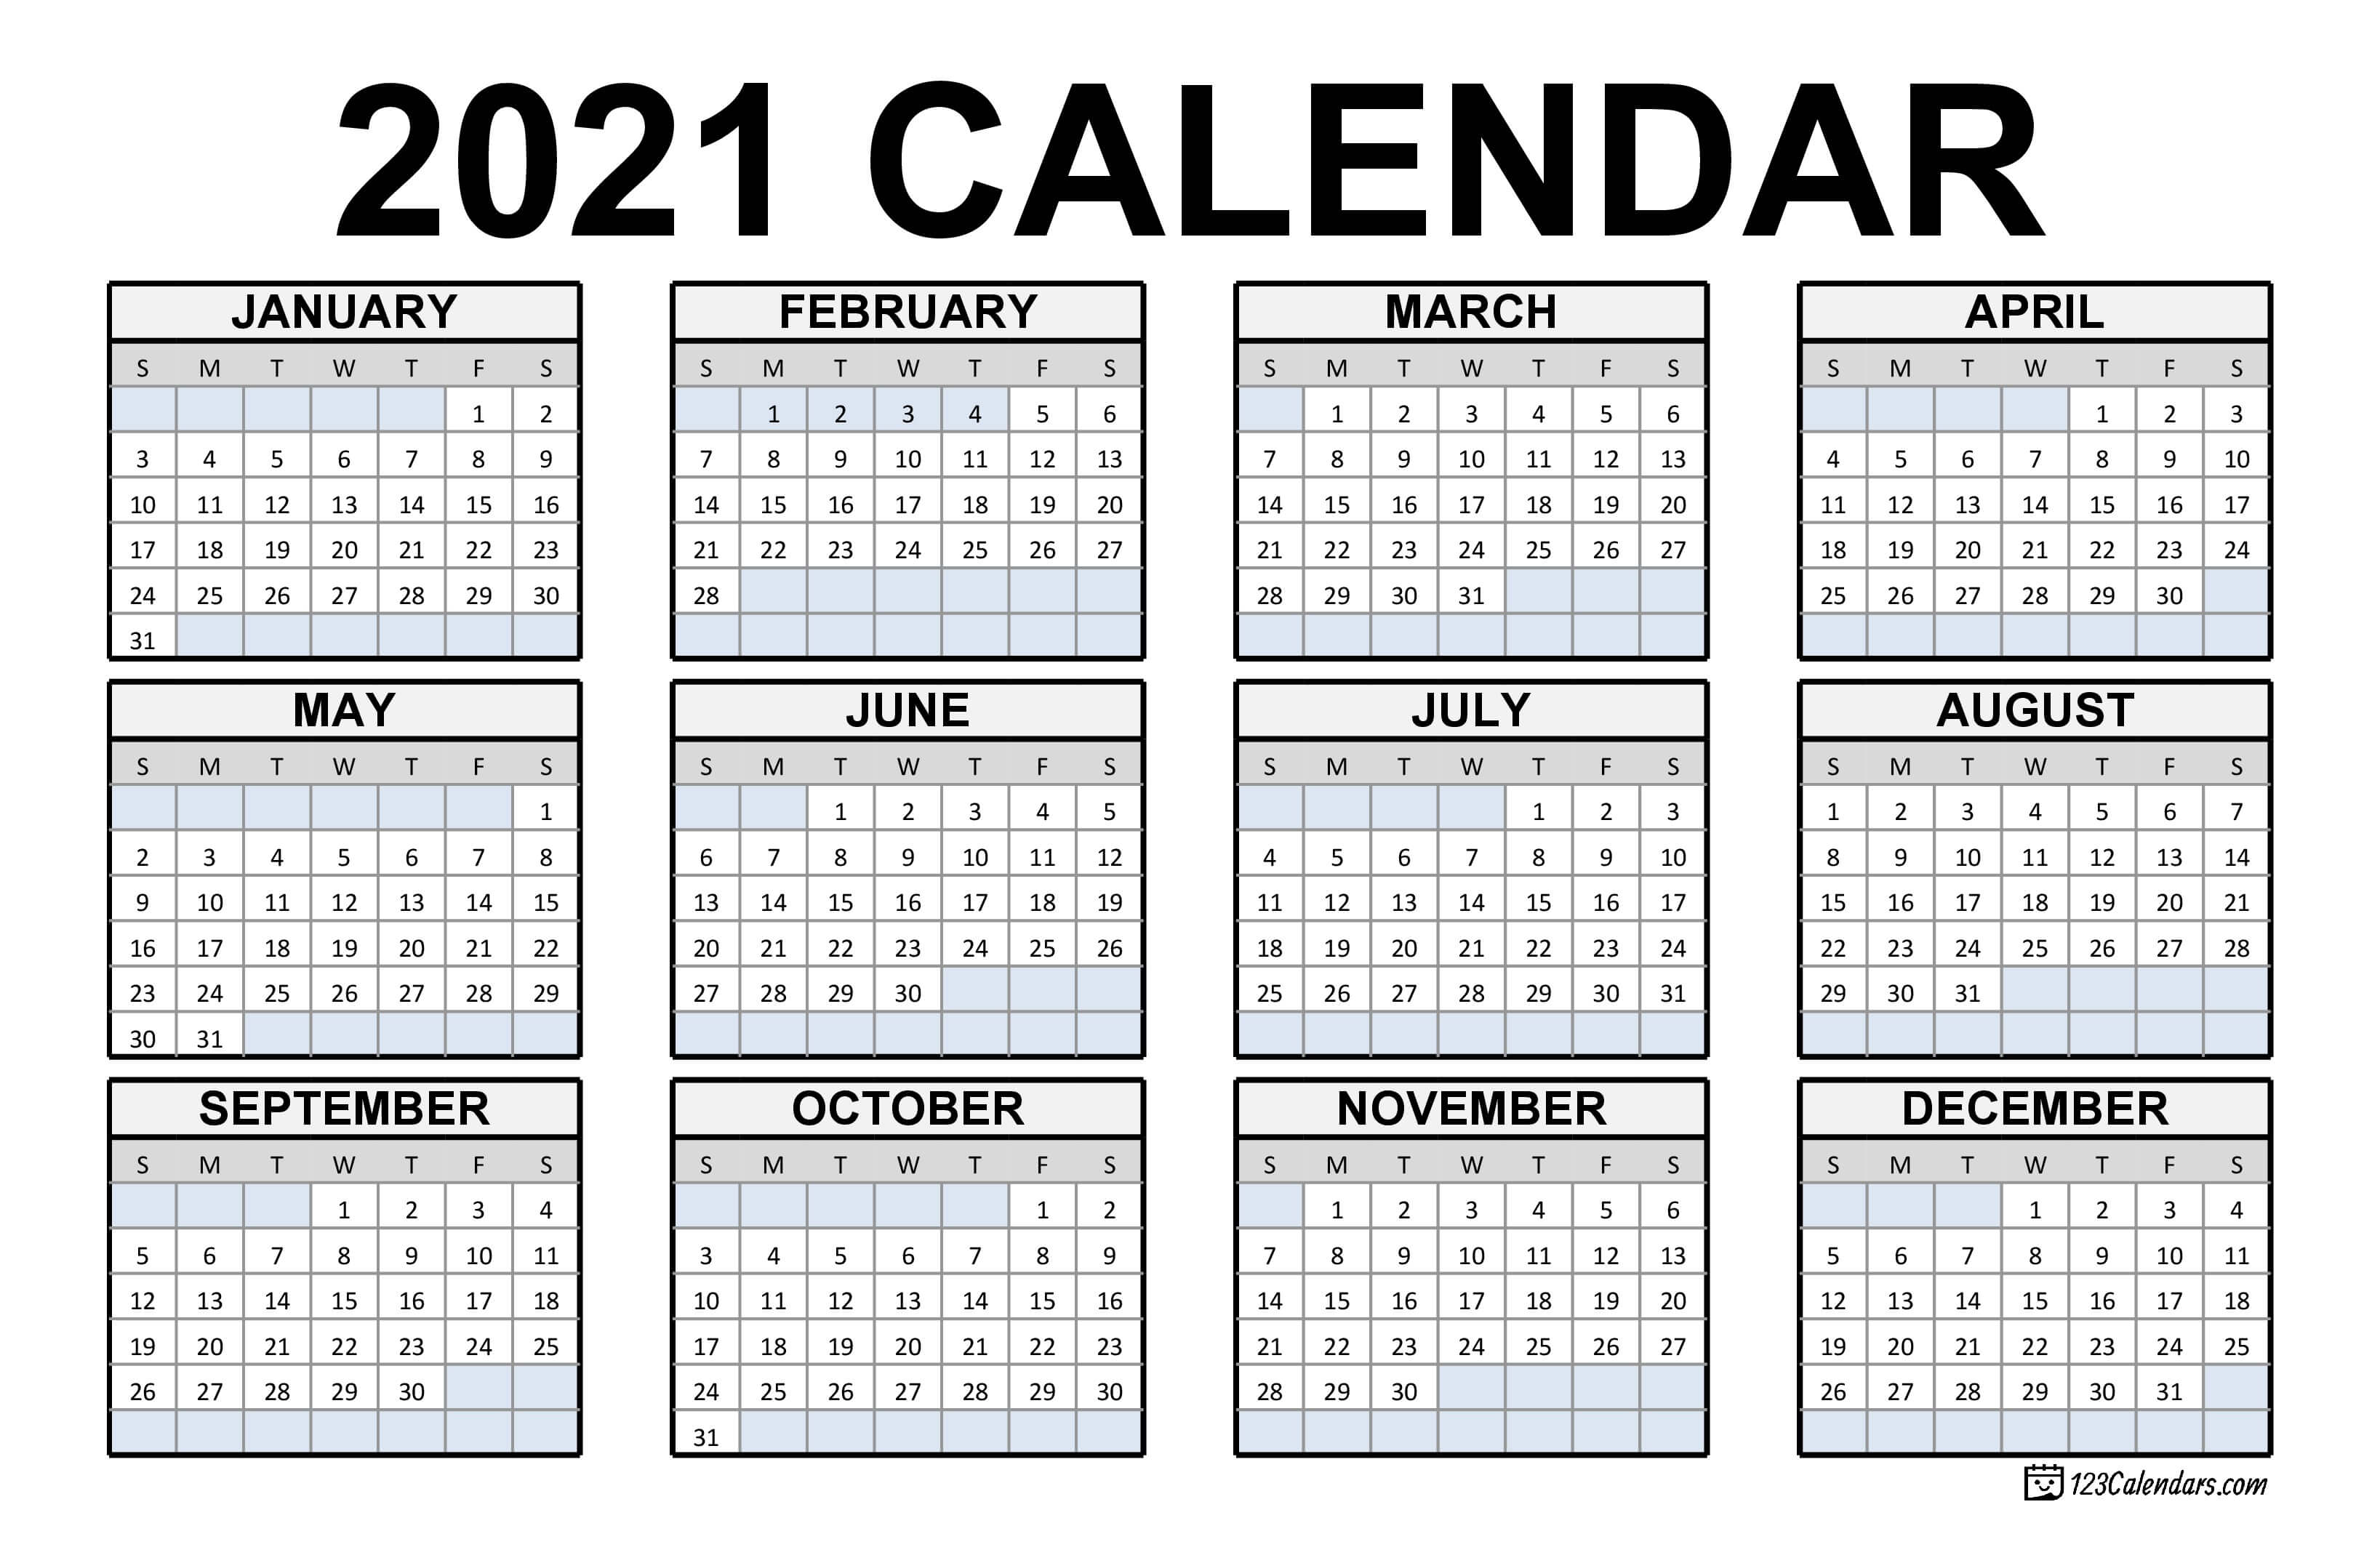 2021 Printable Calendar | 123Calendars.com